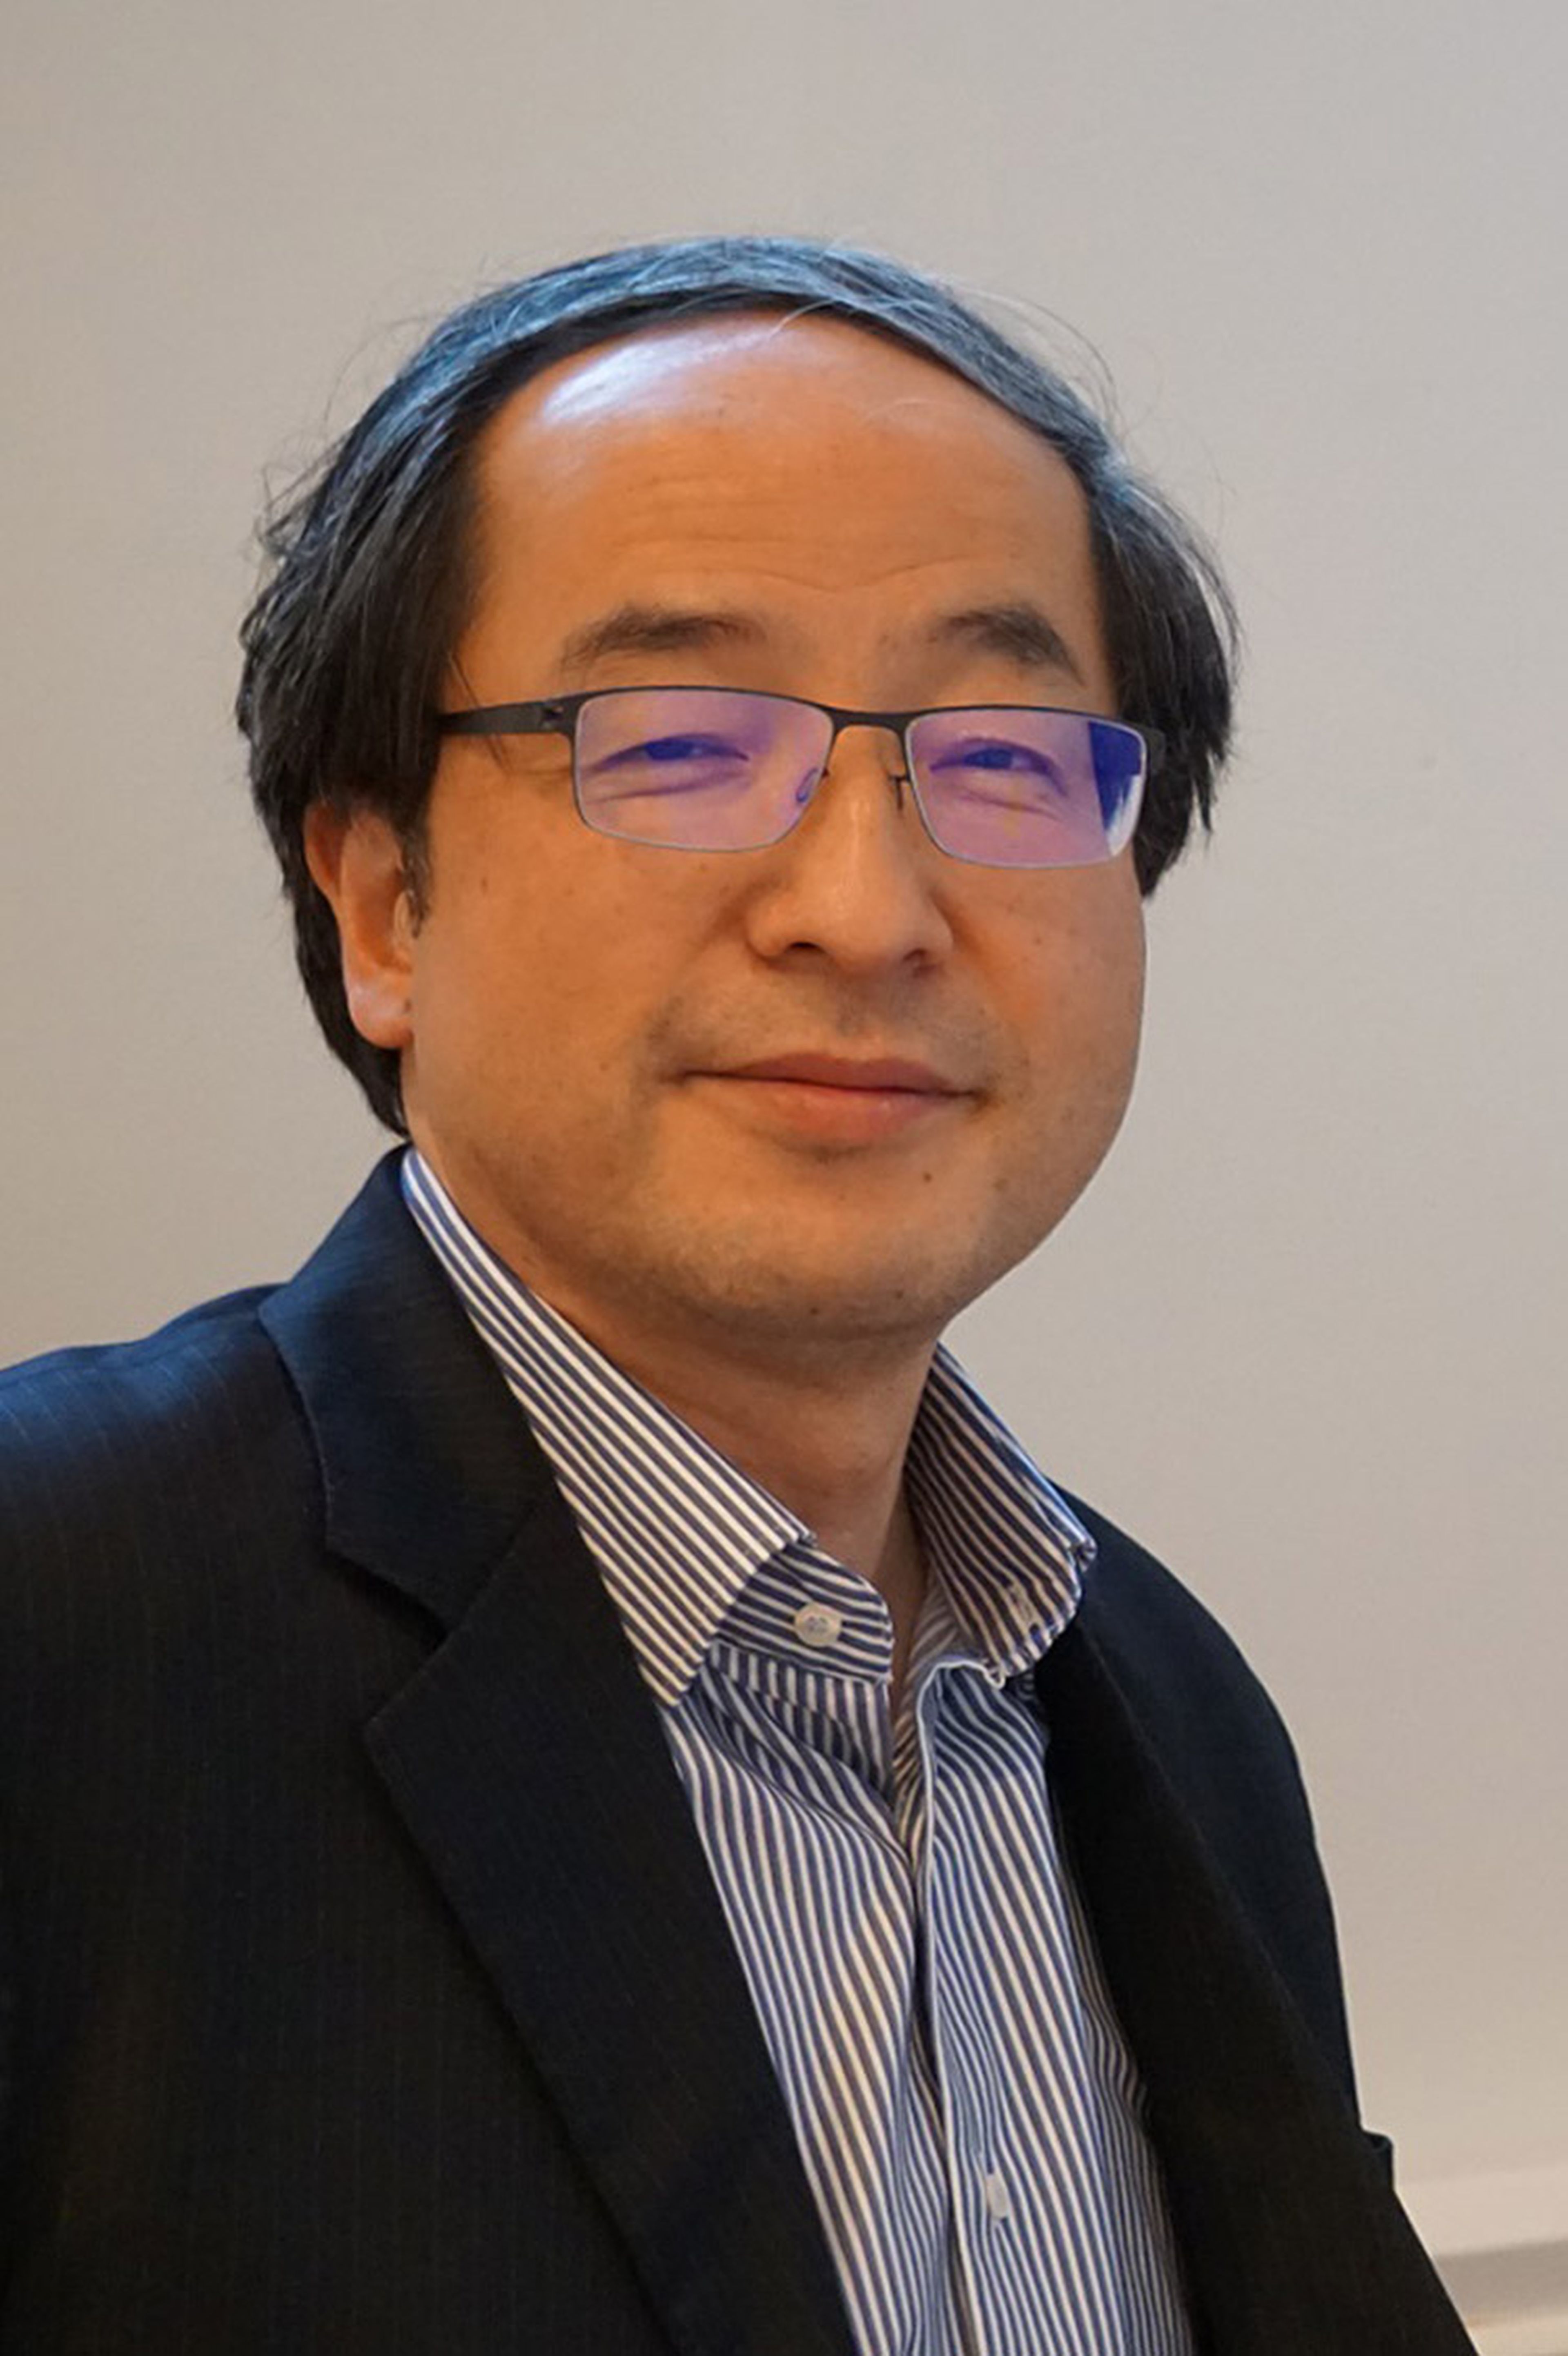 Eric Chen, vicepresidente de Asus